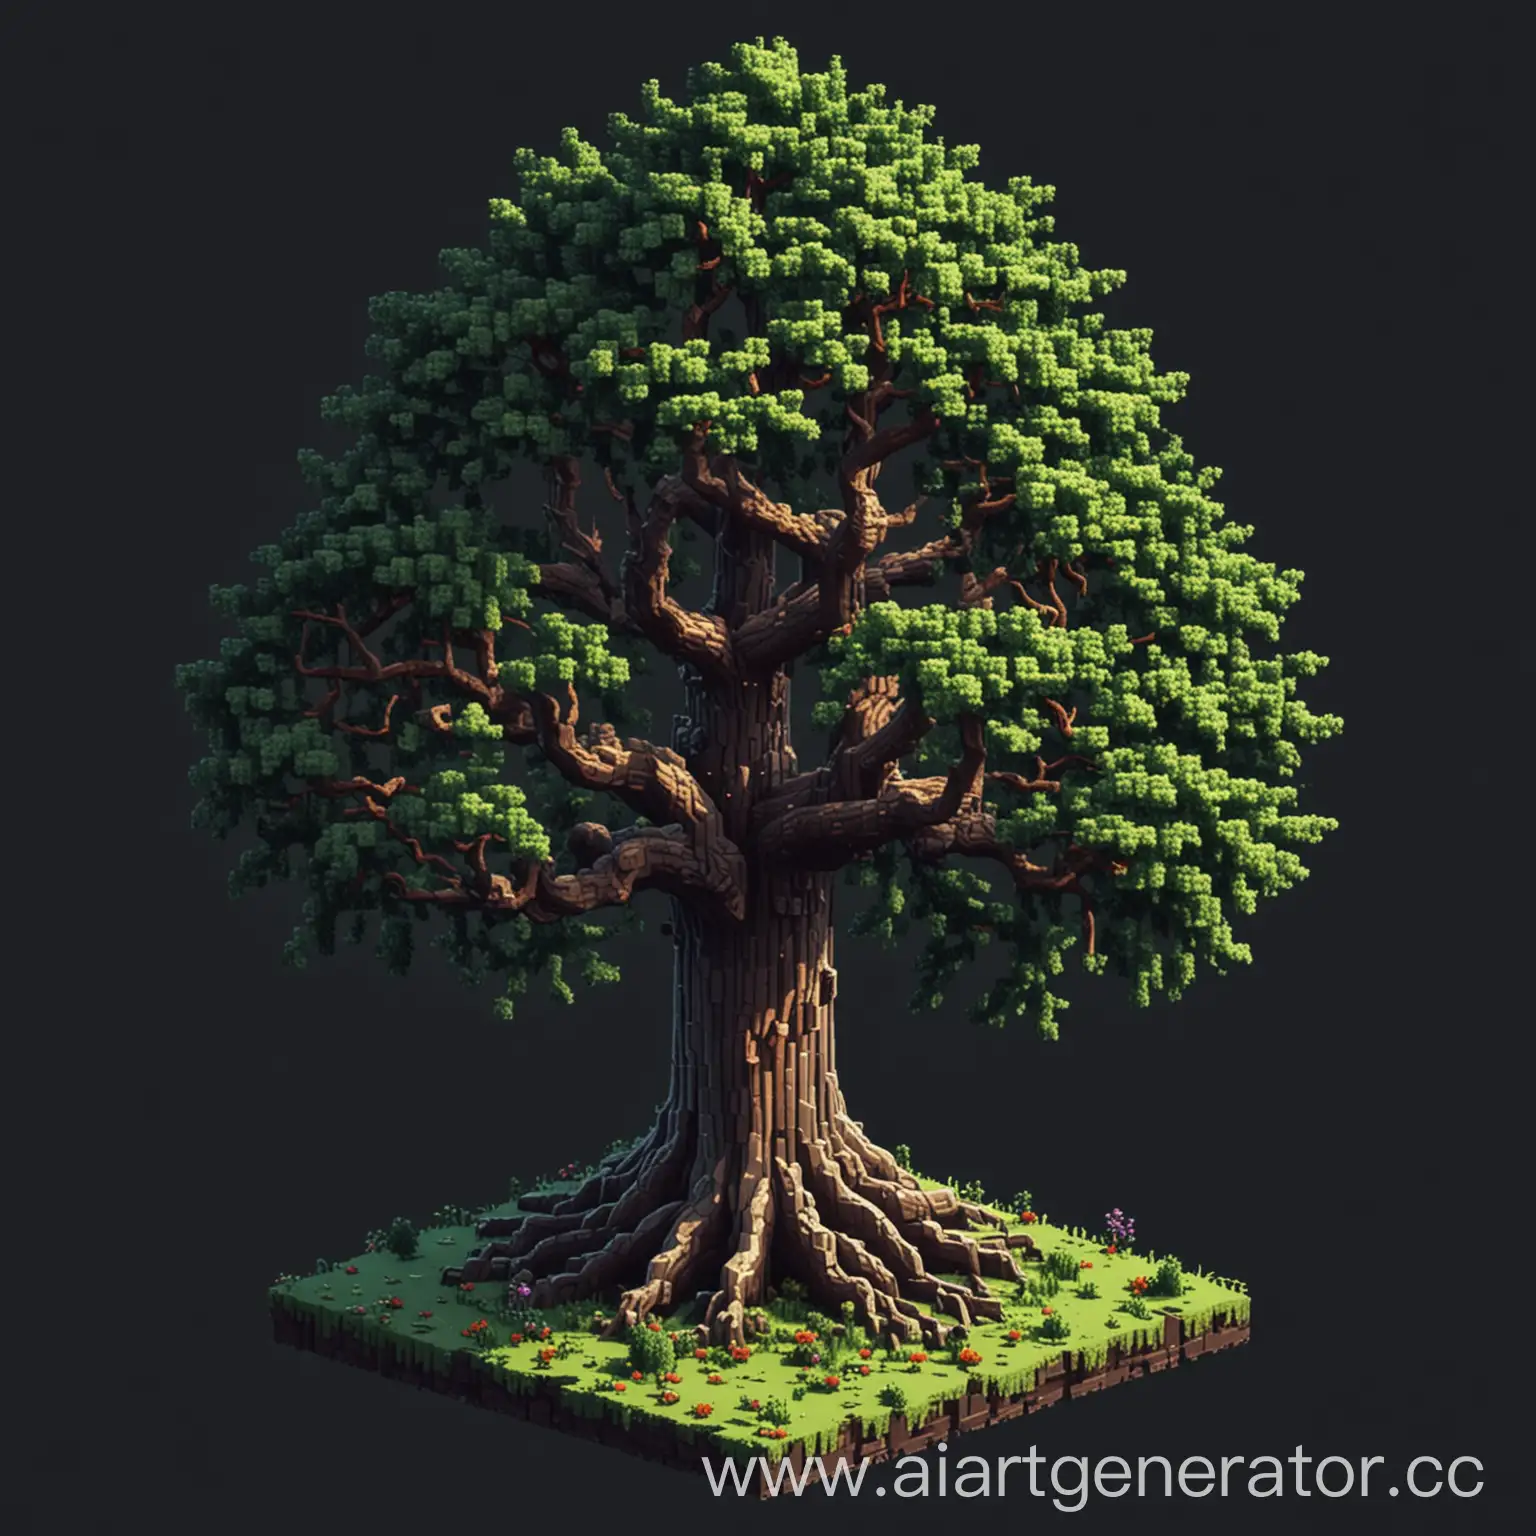 дерево в изометрии в стиле пиксельарт, большой размер, темное фэнтази